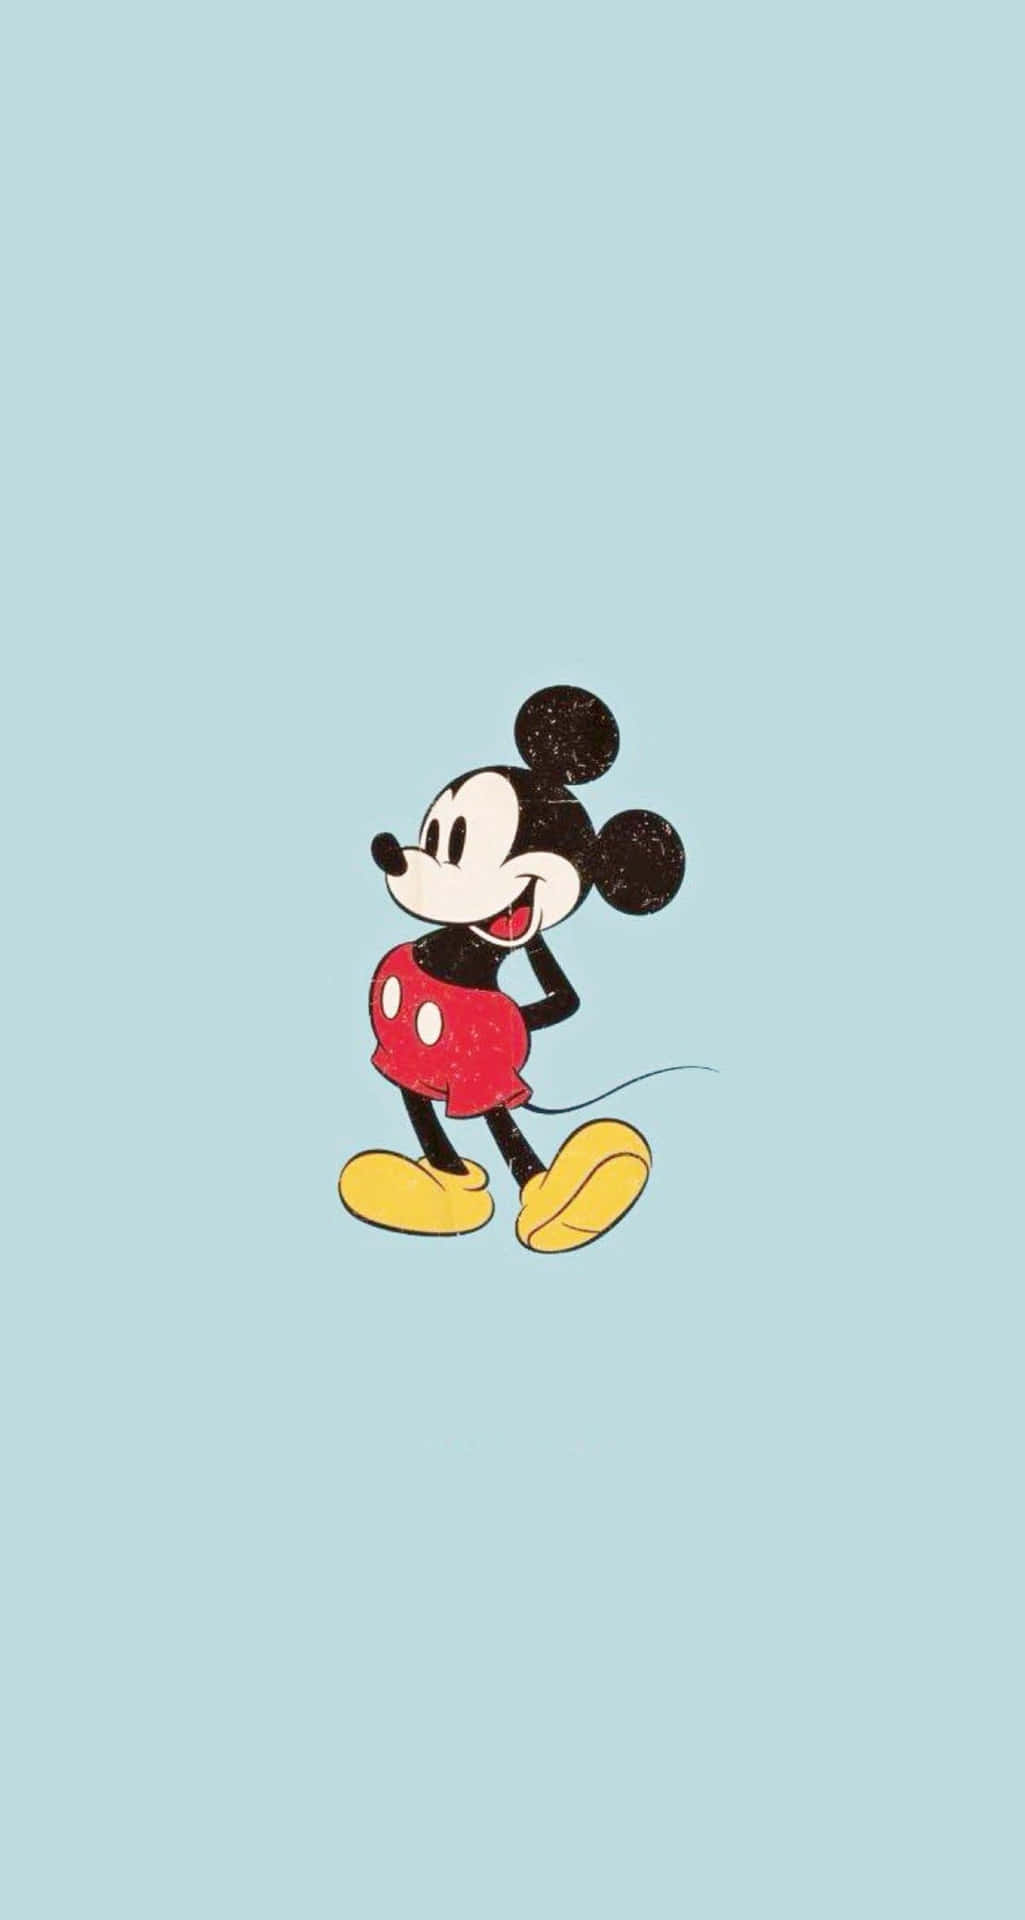 Dieklassische Mickey Mouse - Ein Symbol Für Kindheit Und Disney-unterhaltung.